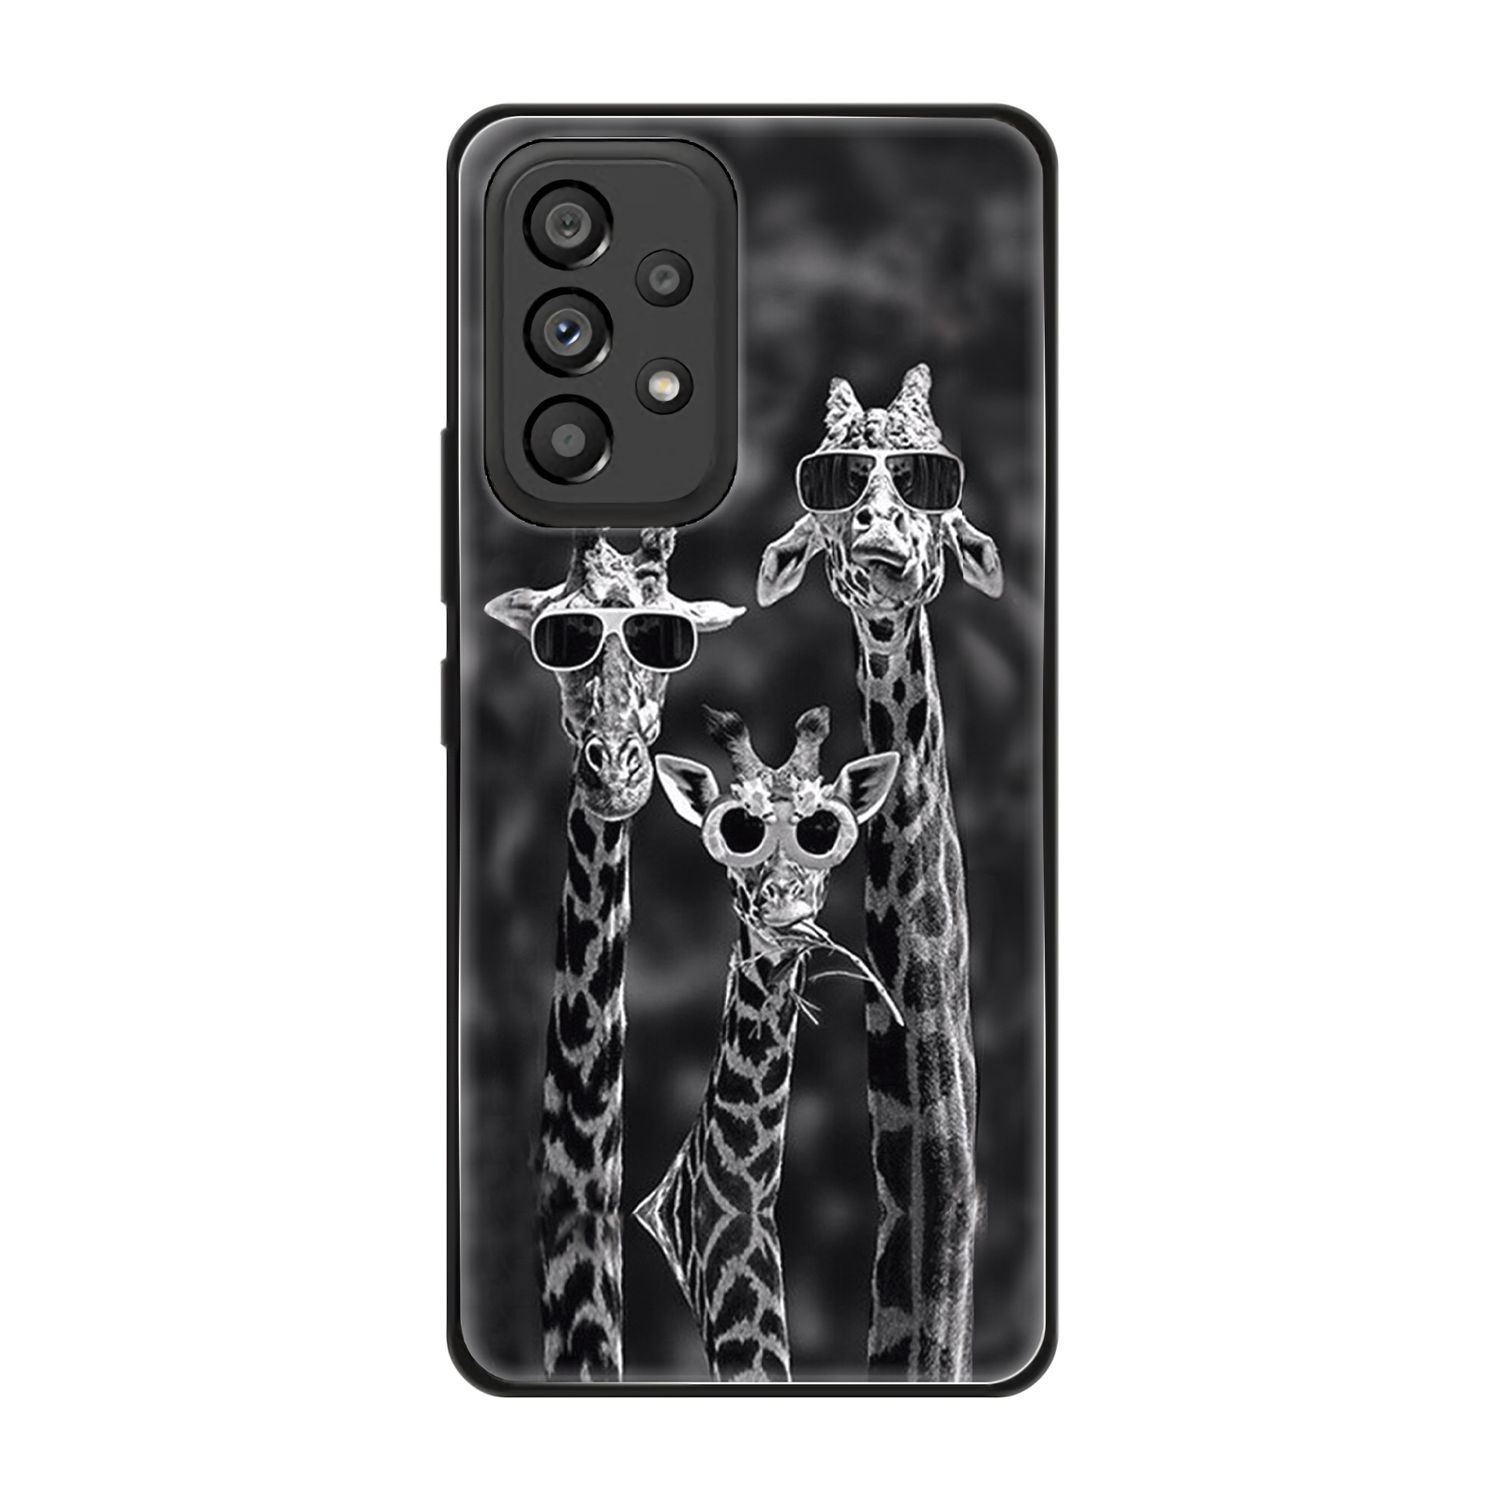 KÖNIG DESIGN 5G, Case, Galaxy 3 Giraffen Samsung, A53 Backcover